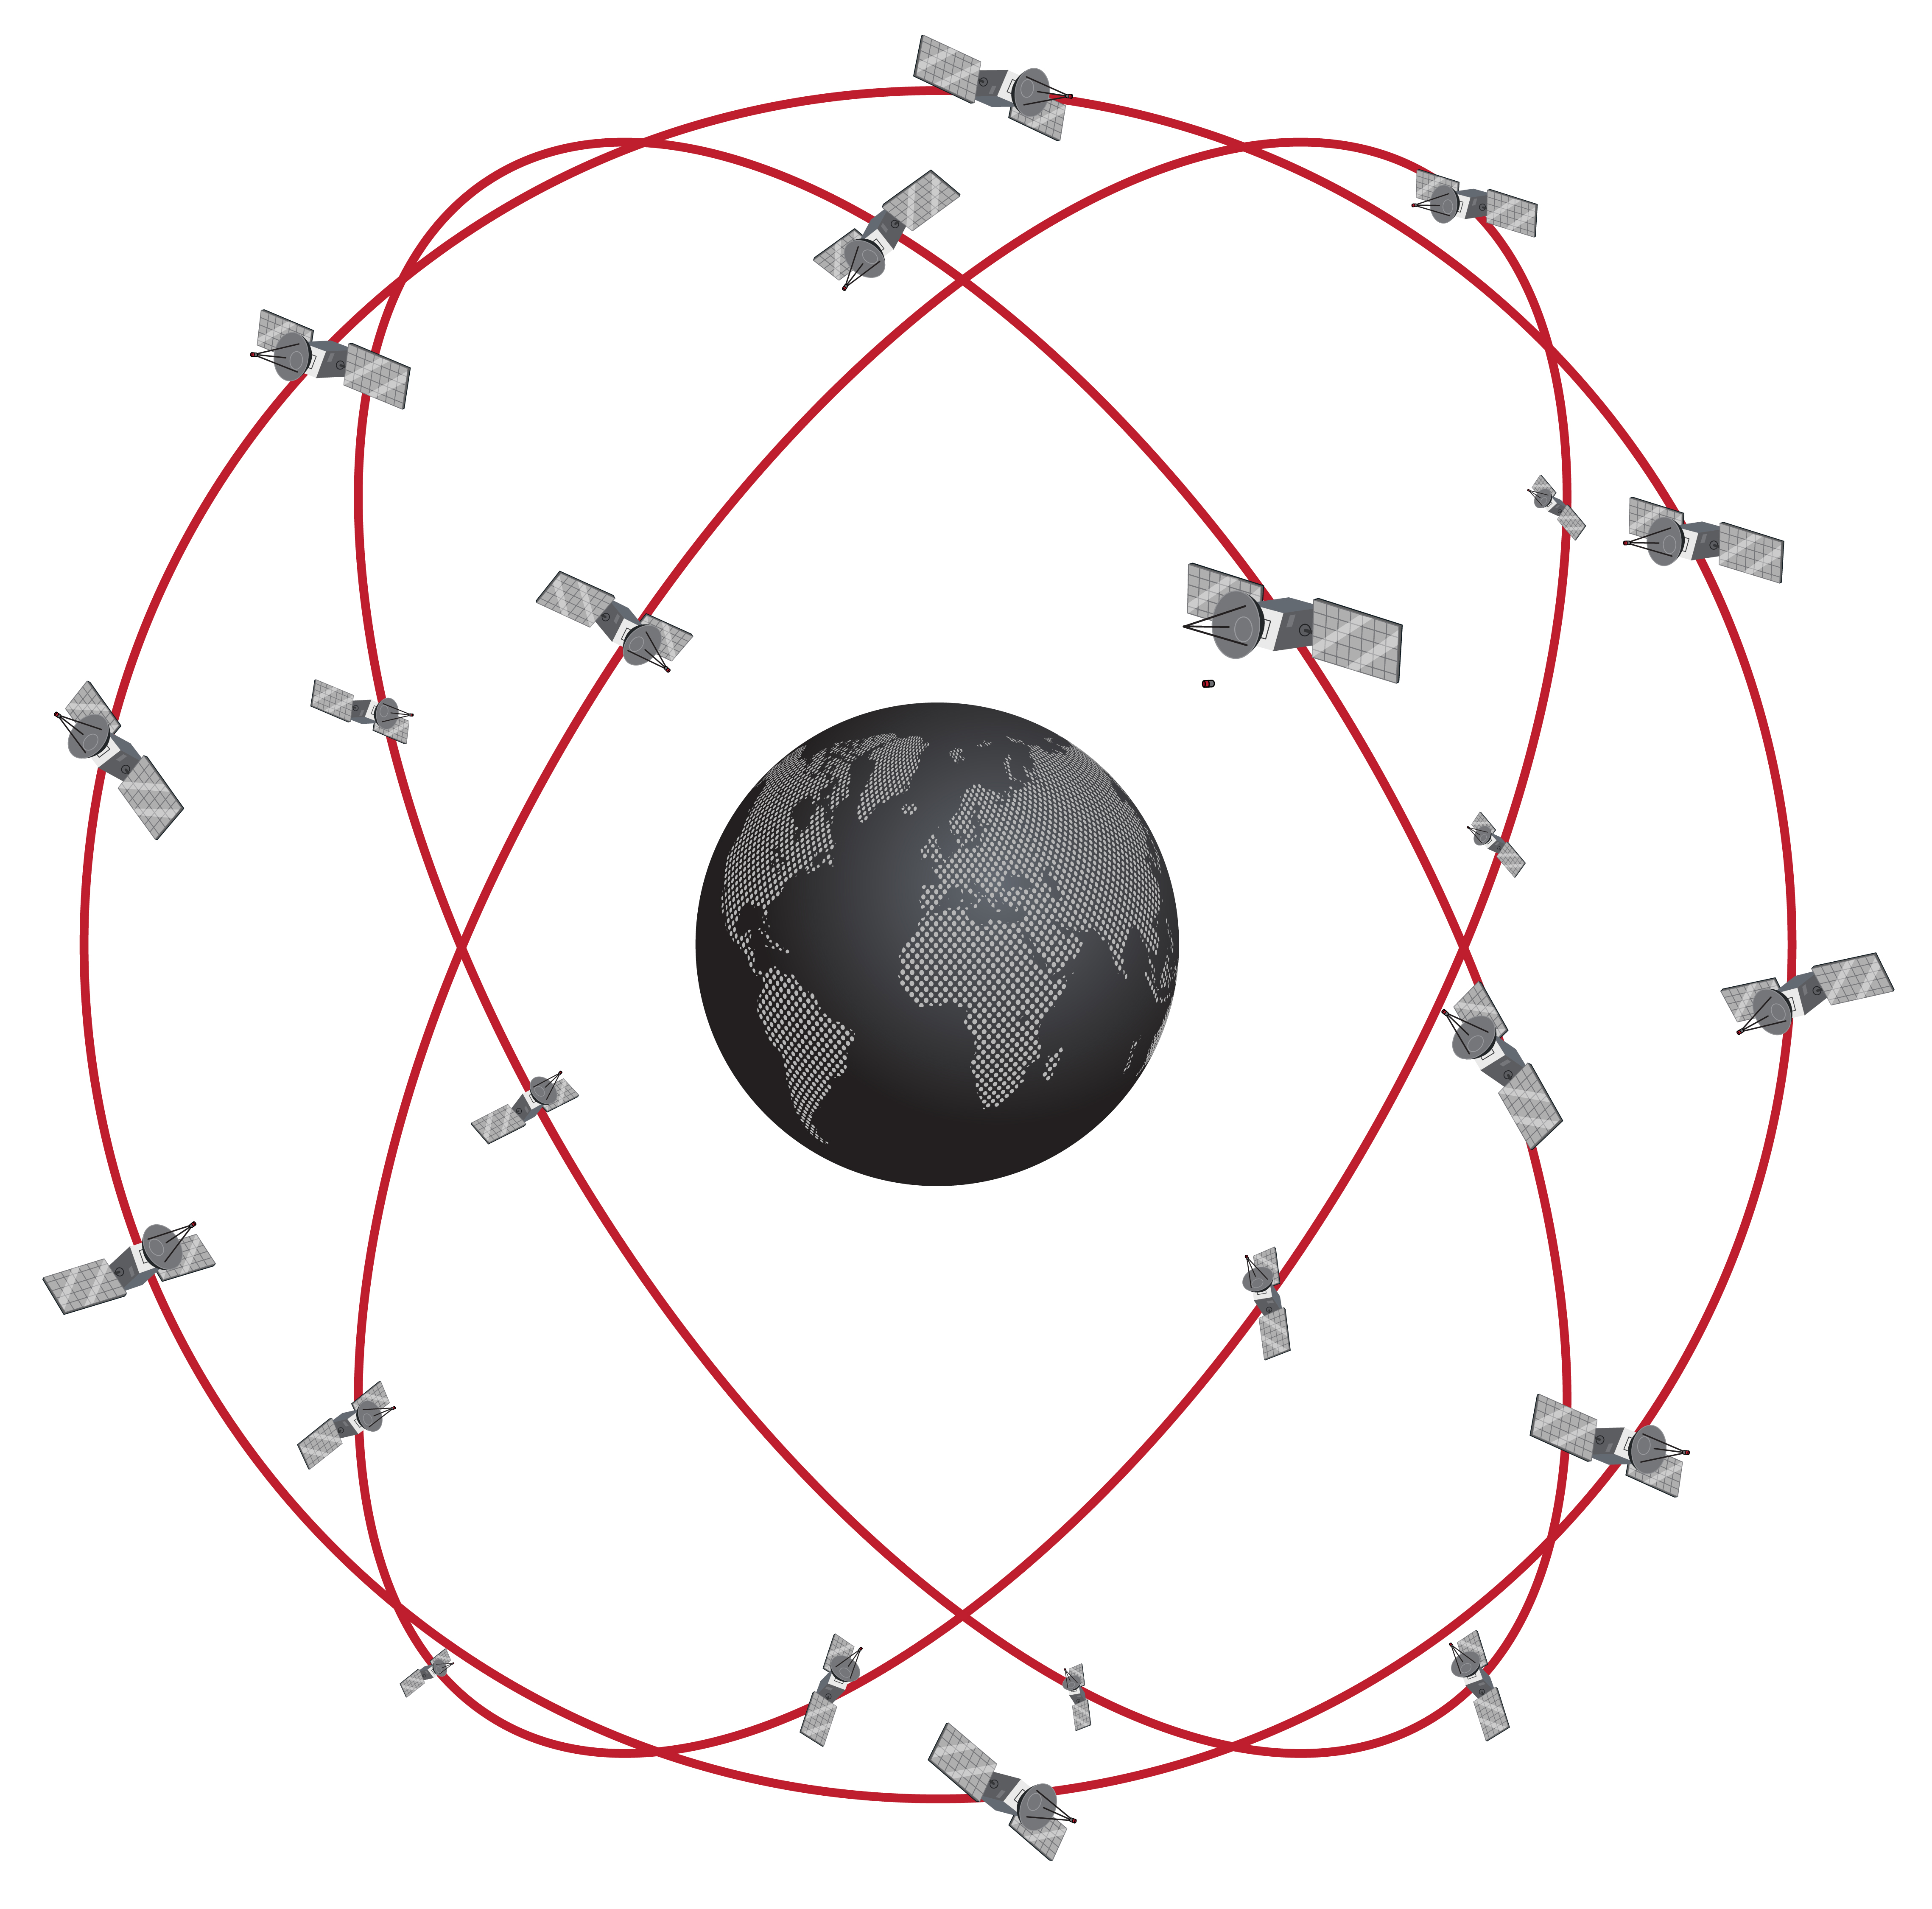 GNSS Satellite Constellation